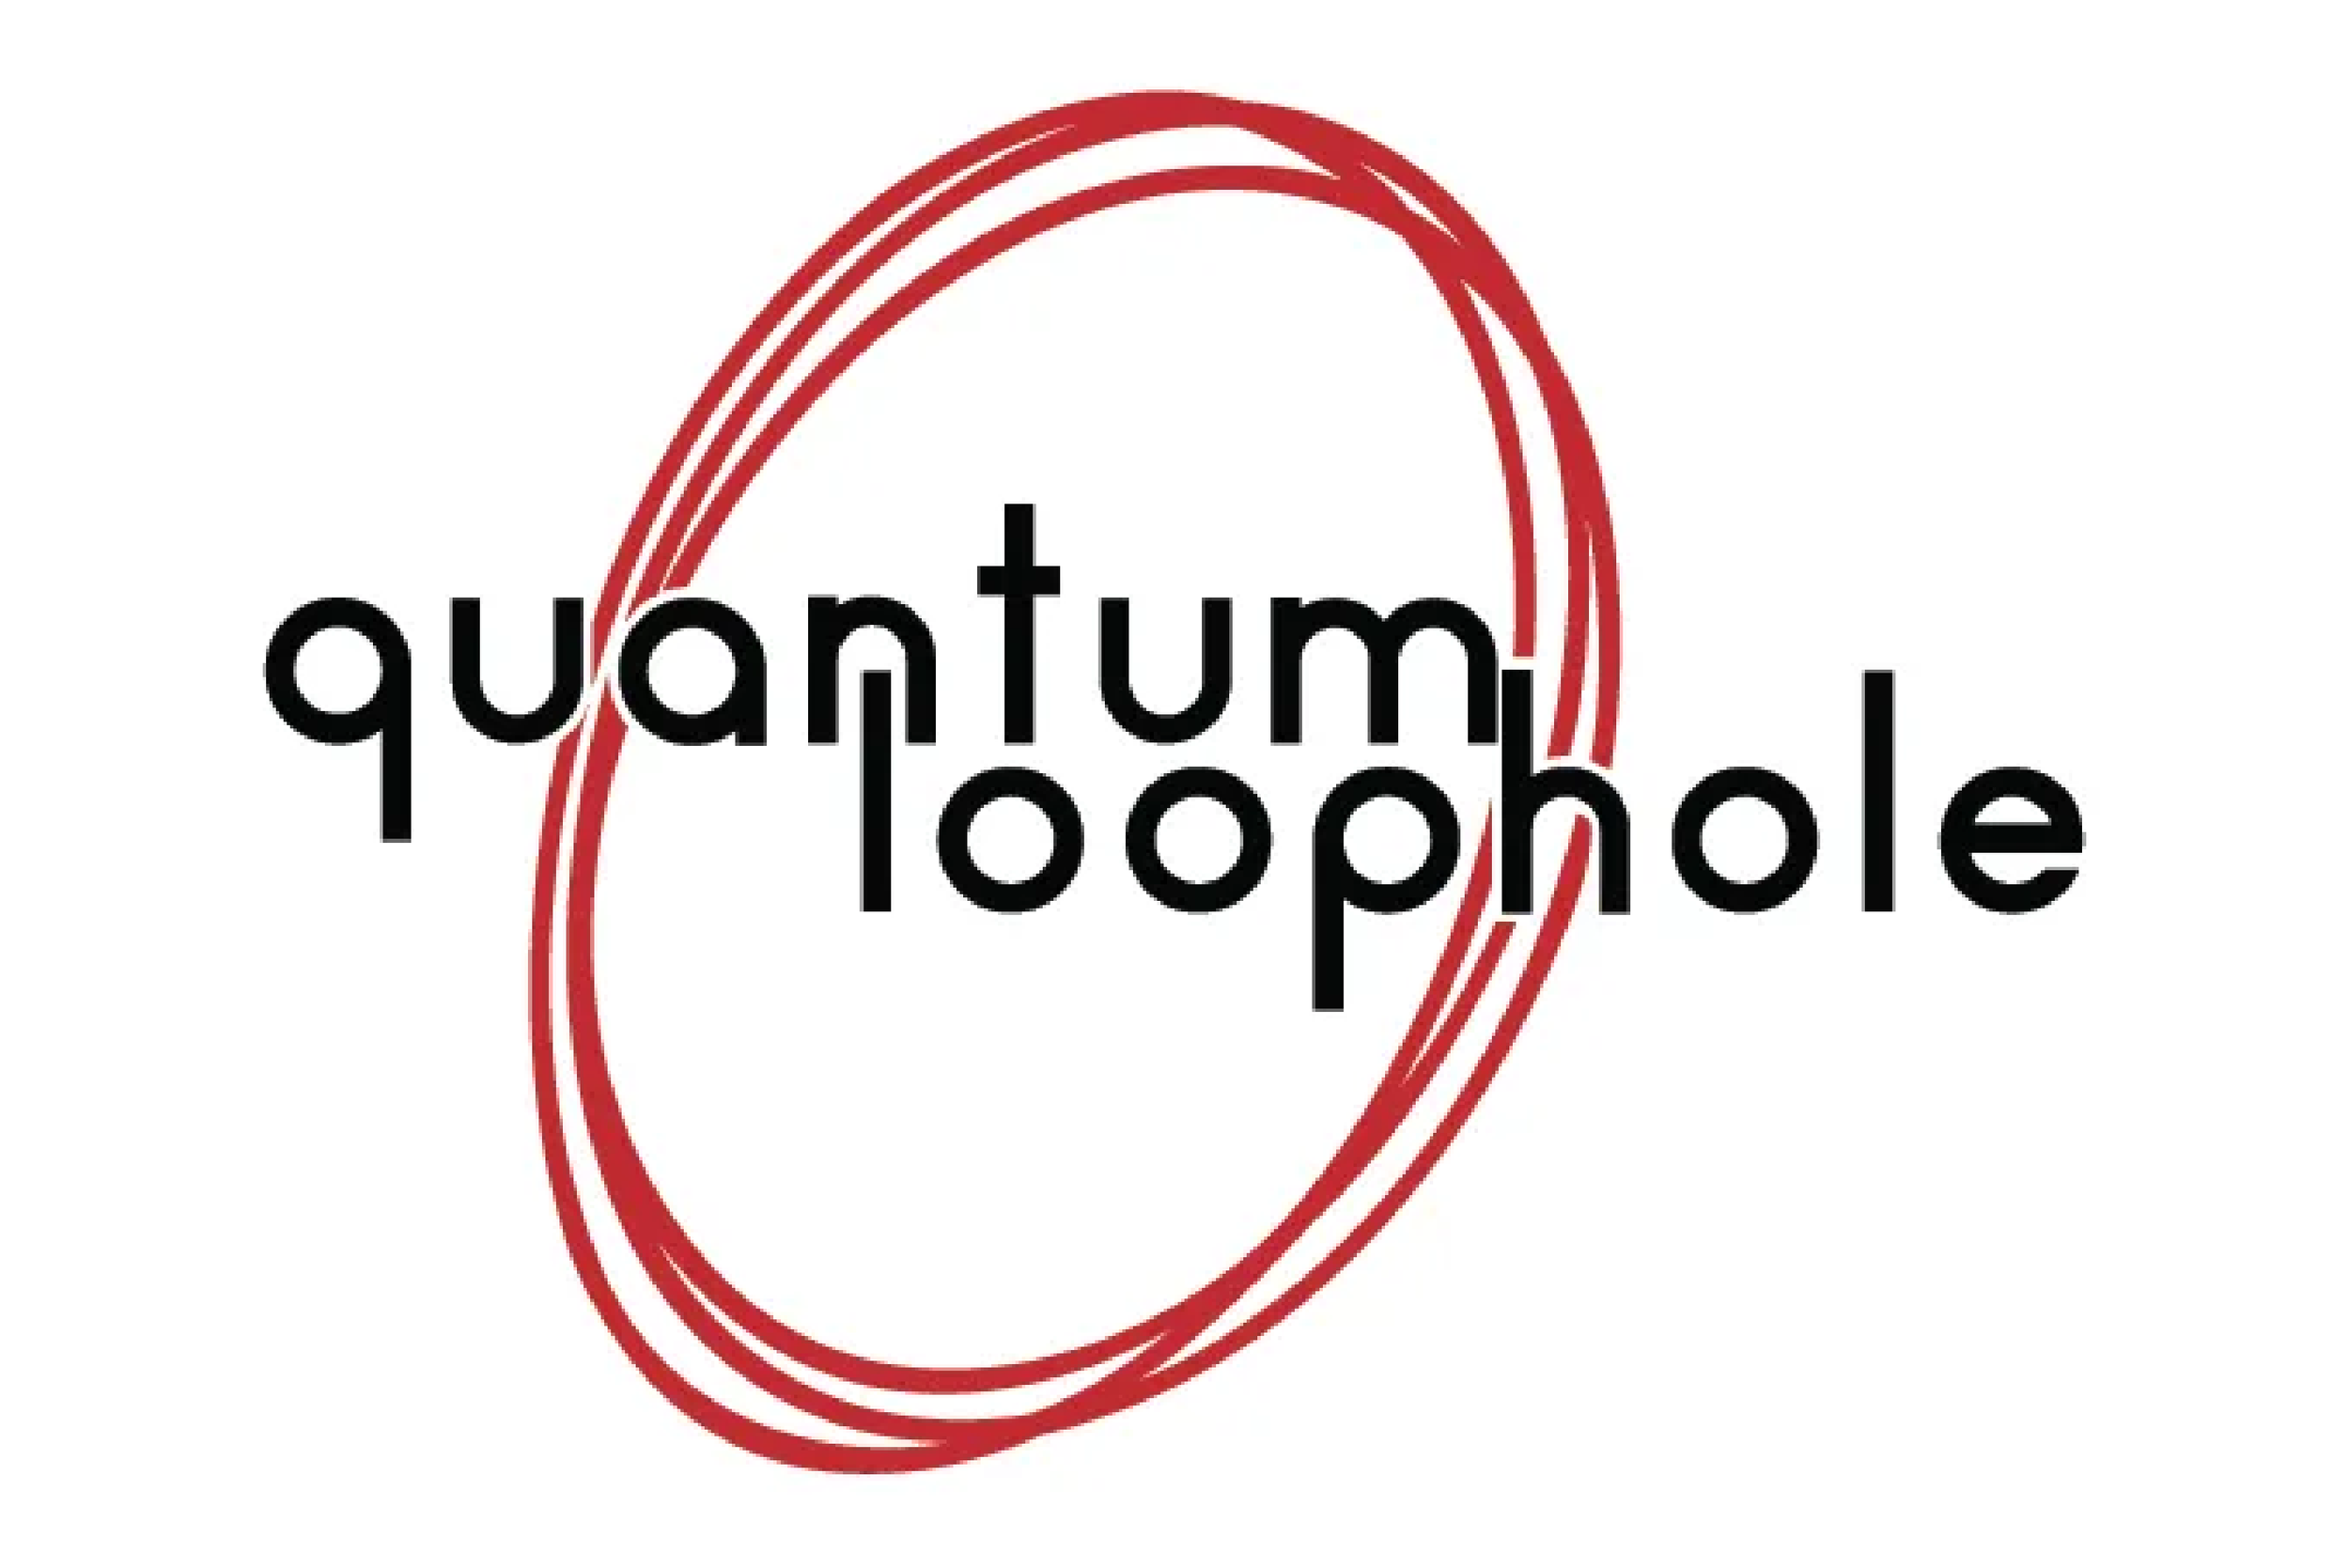 quantum loophole.png